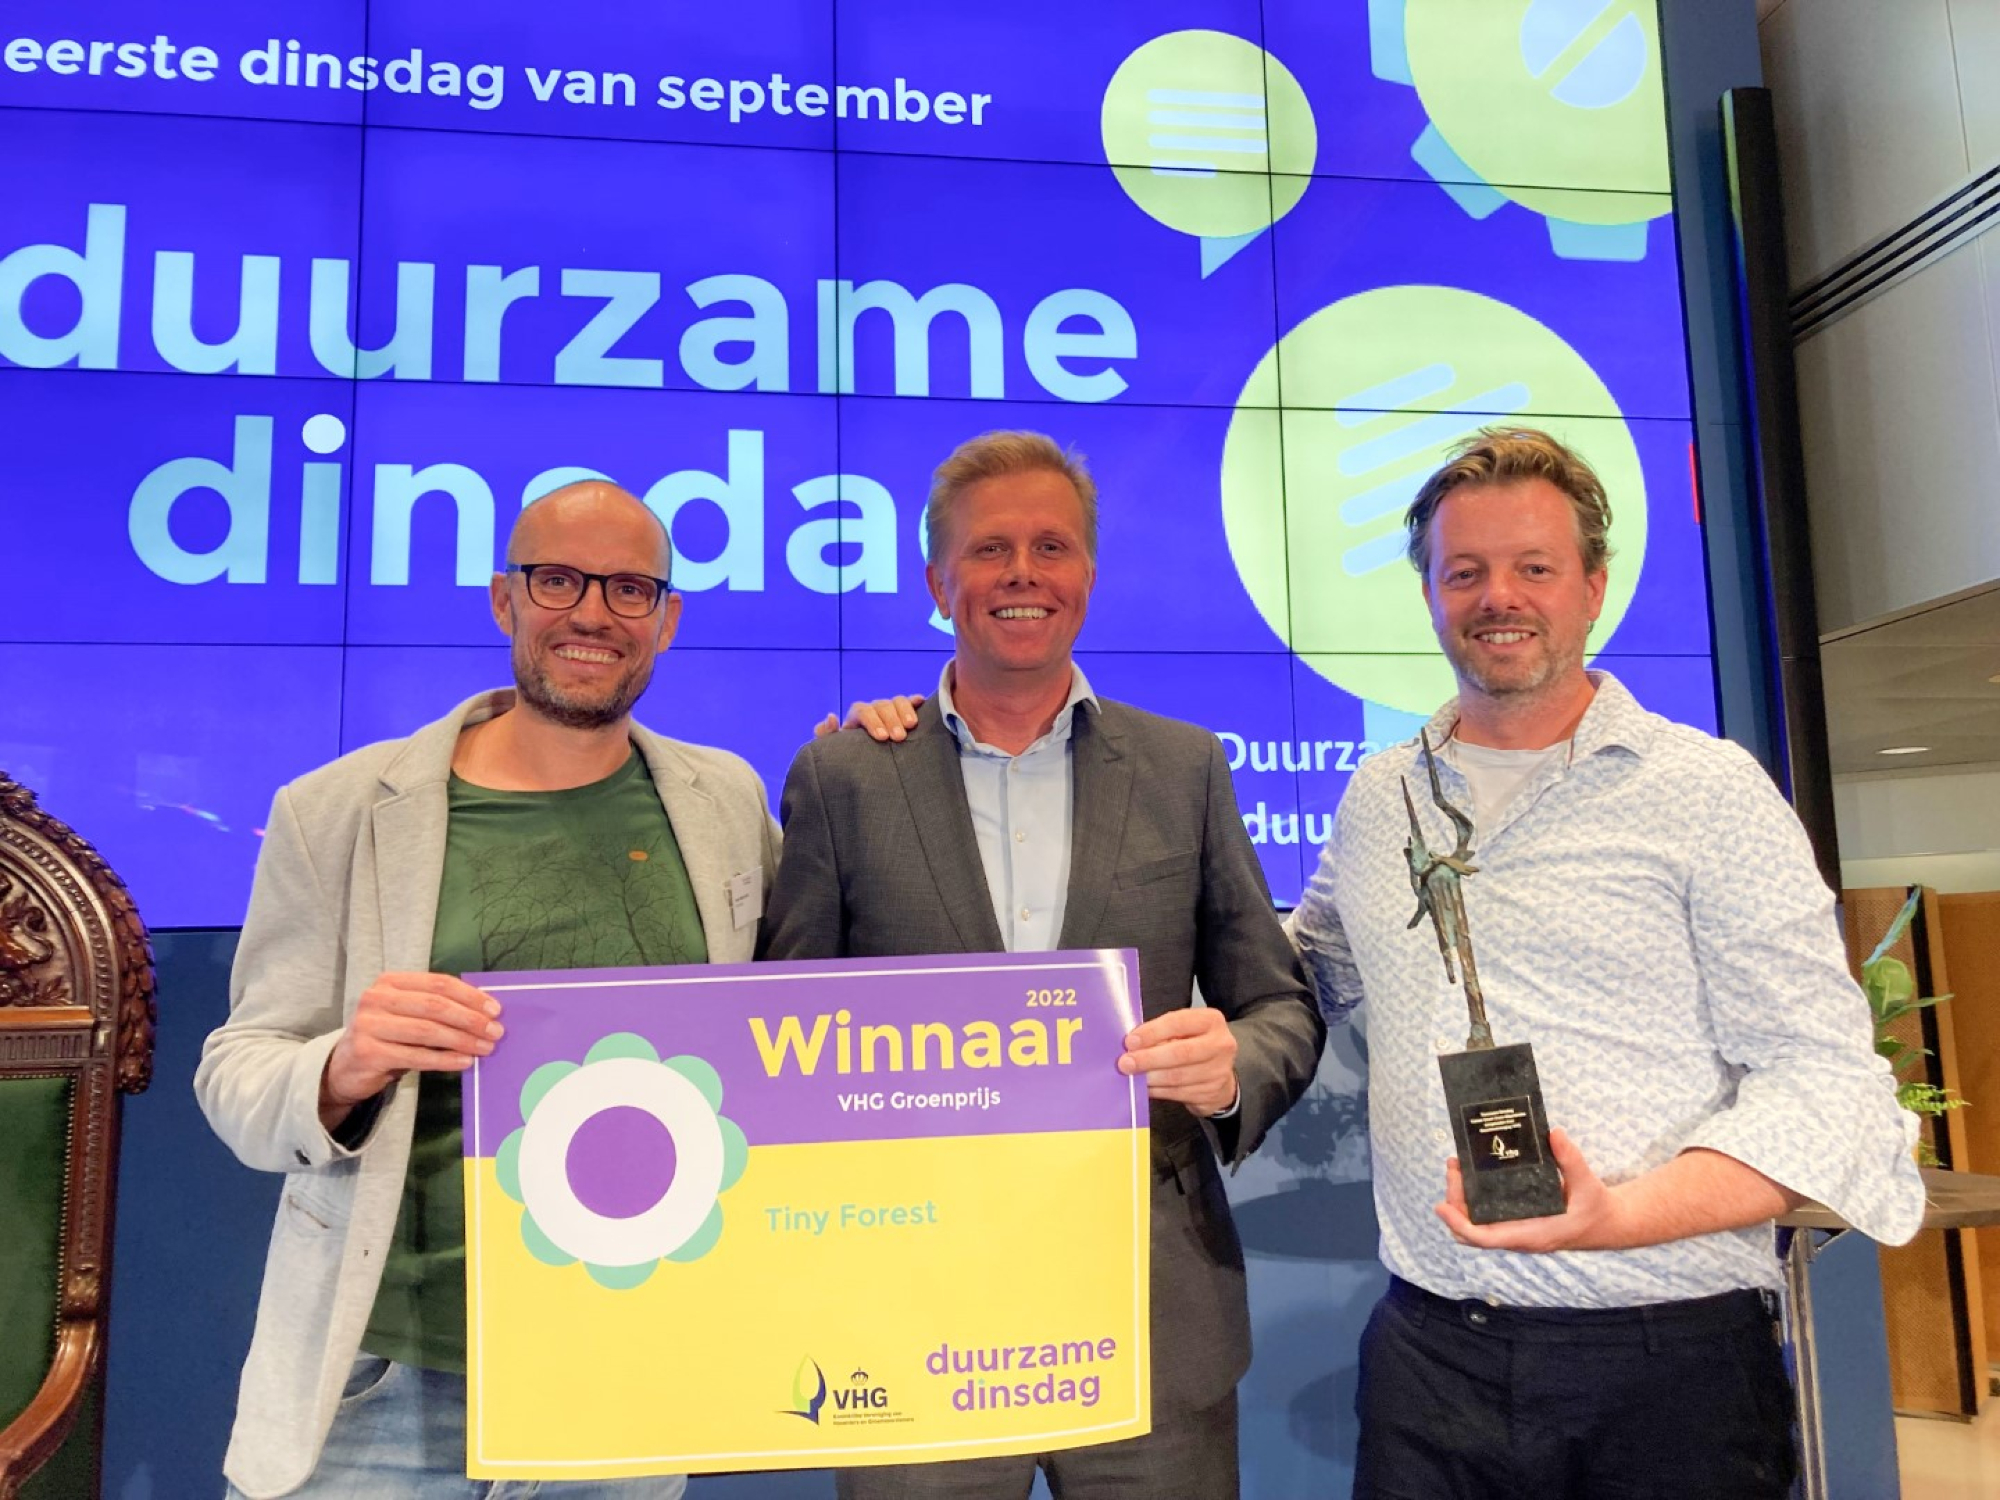 Daan Bleichrodt en zijn collega Ian Mostert van IVN Natuureducatie ontvangen de VHG Groenprijs 2022 uit handen van Arne Weverling namens Koninklijke VHG. Foto: Annemieke Bos.